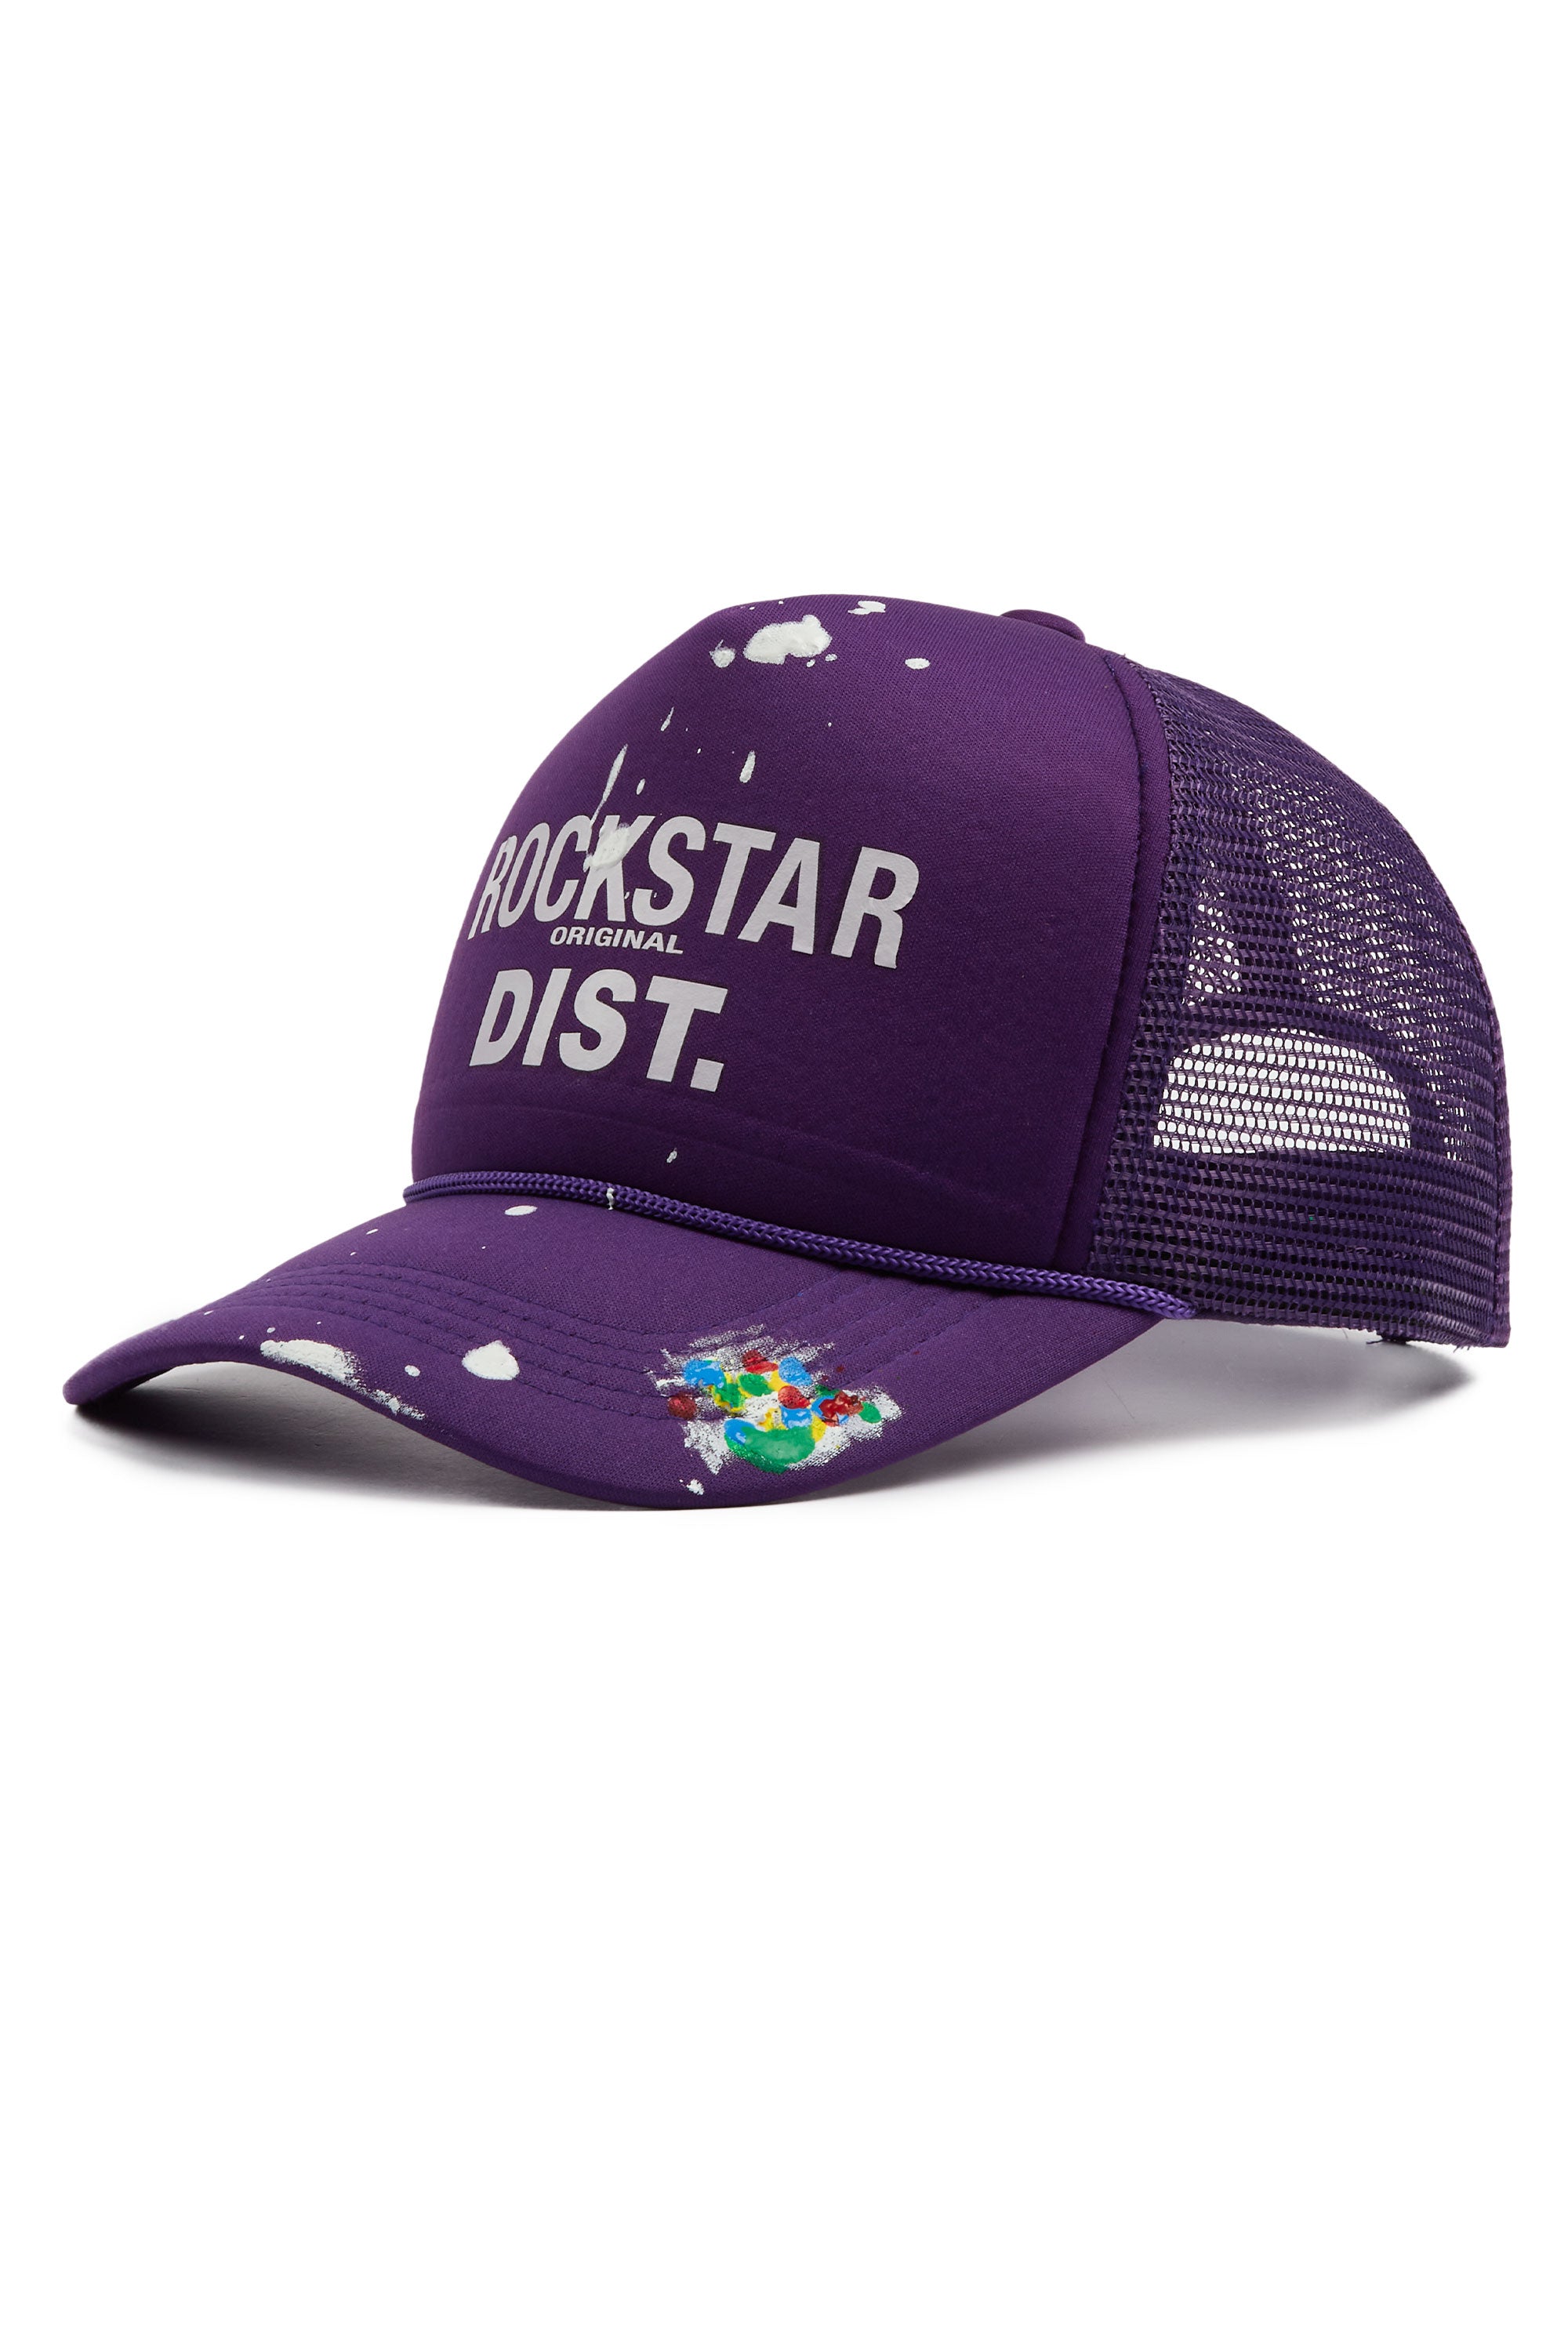 Neptune Purple Trucker Hat